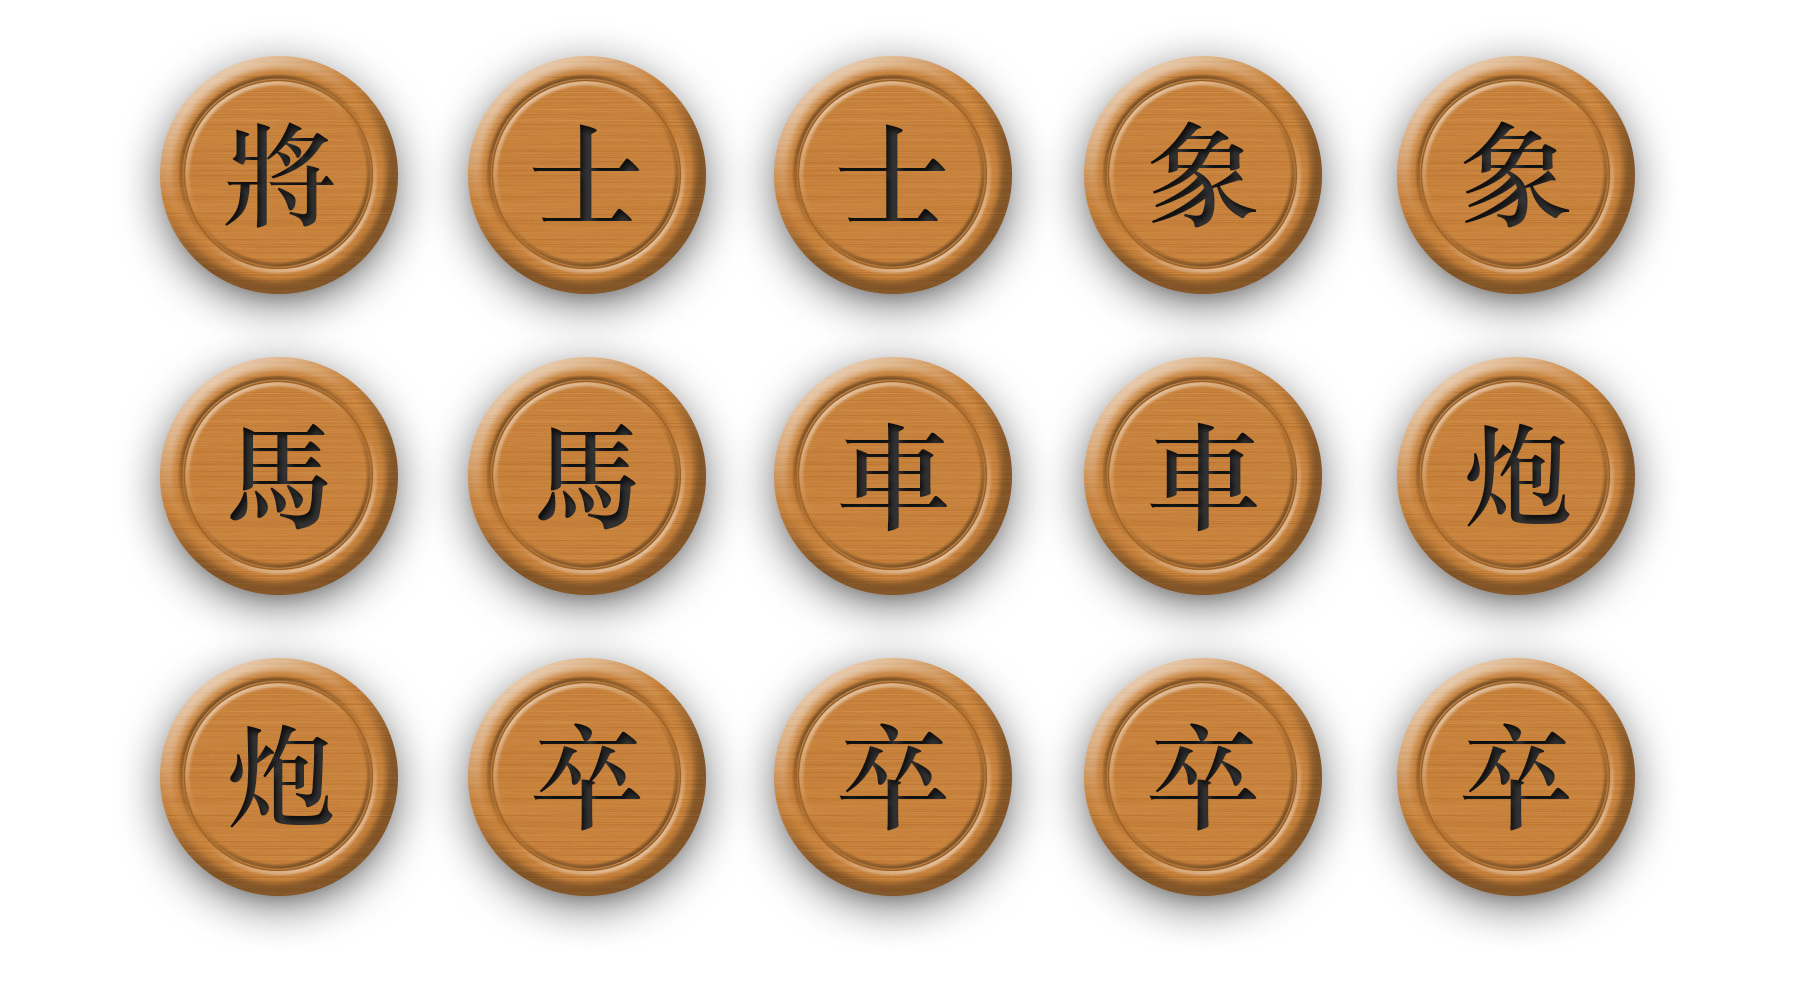 中国象棋的基本规则（有图，通俗易懂） - 哔哩哔哩